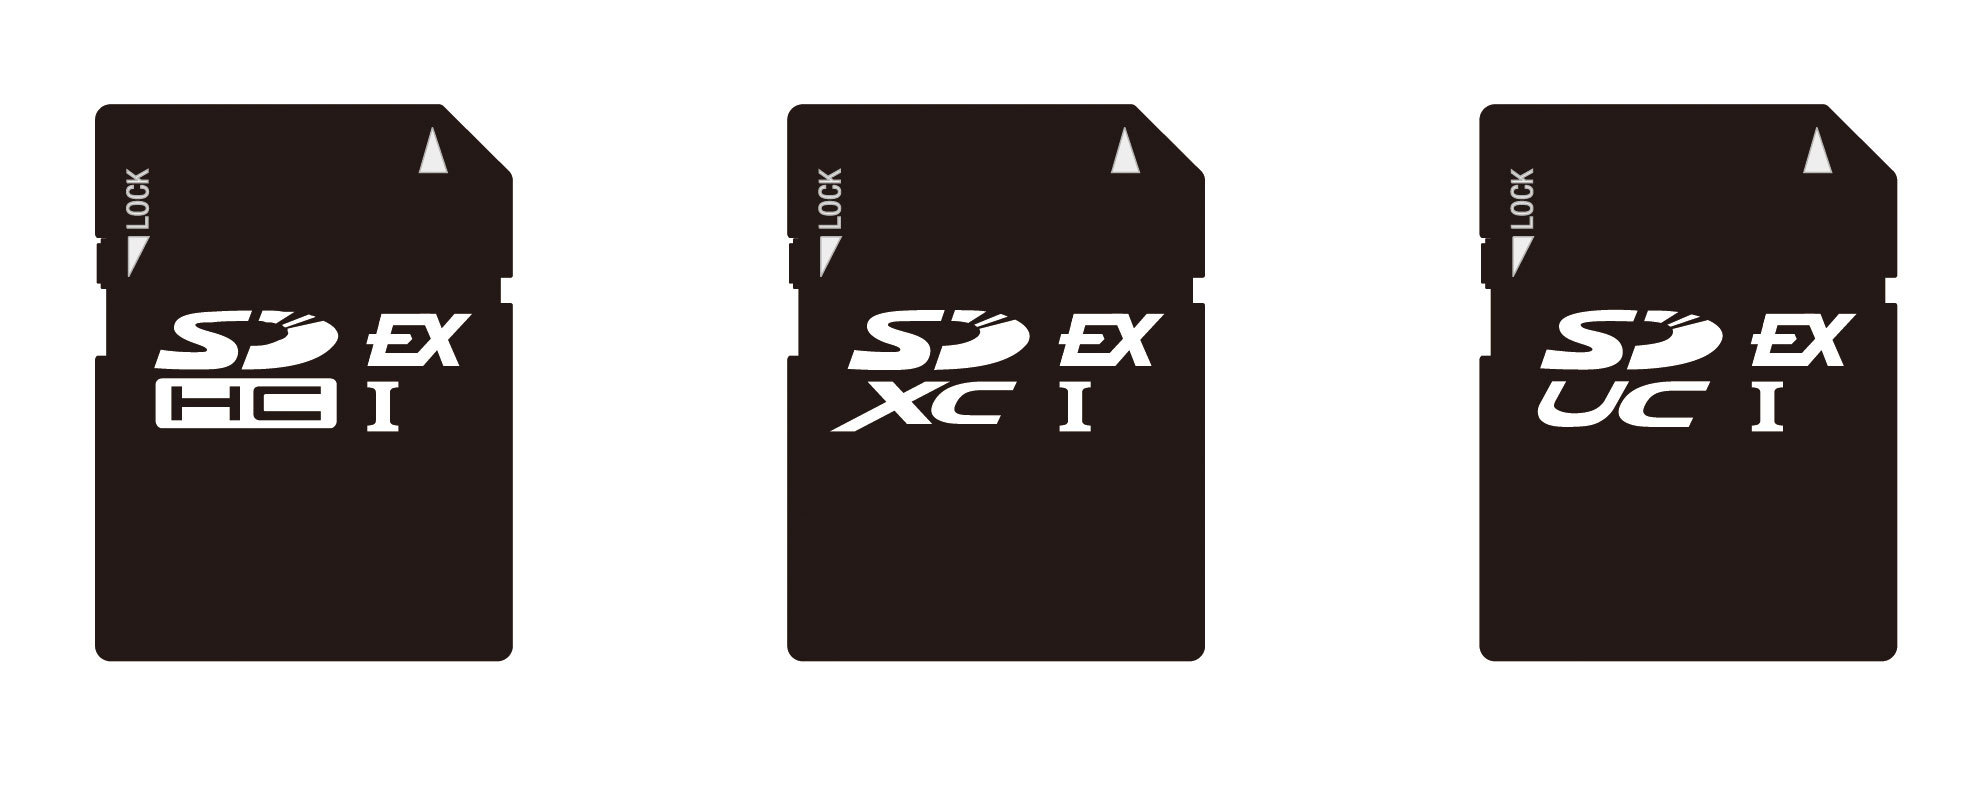 Cartões de memória SD Express serão quatro vezes mais rápidos